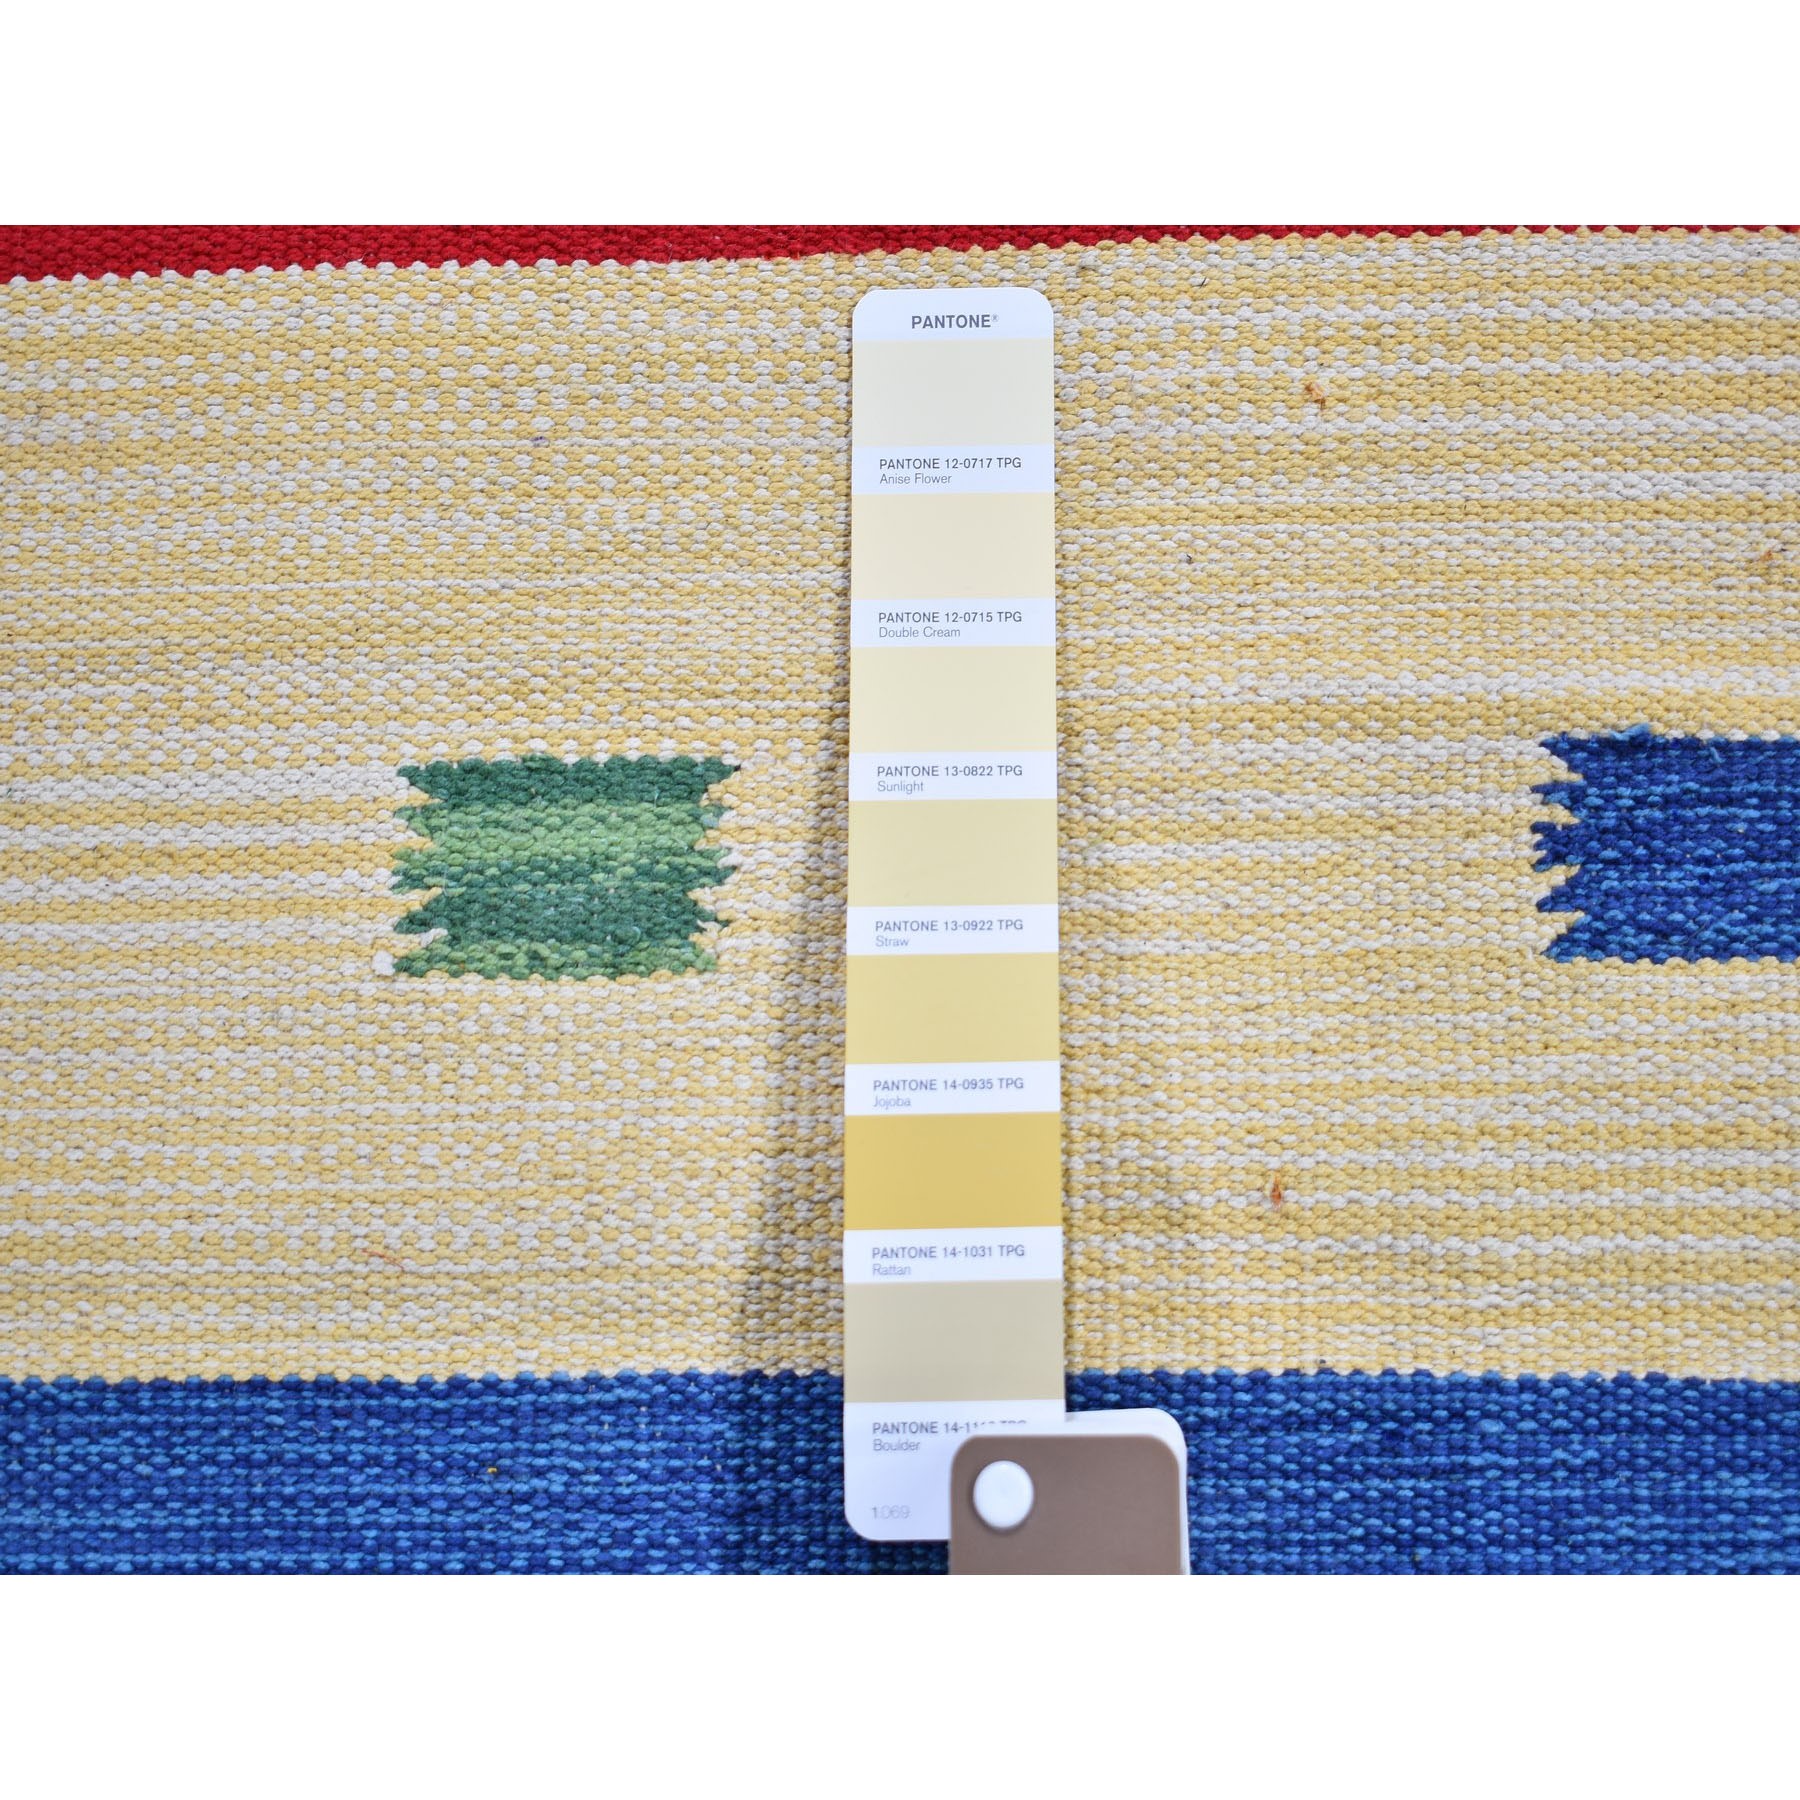 2-6 x7-9  Flat Weave Kilim Hand Woven Runner Southwestern Design Rug 